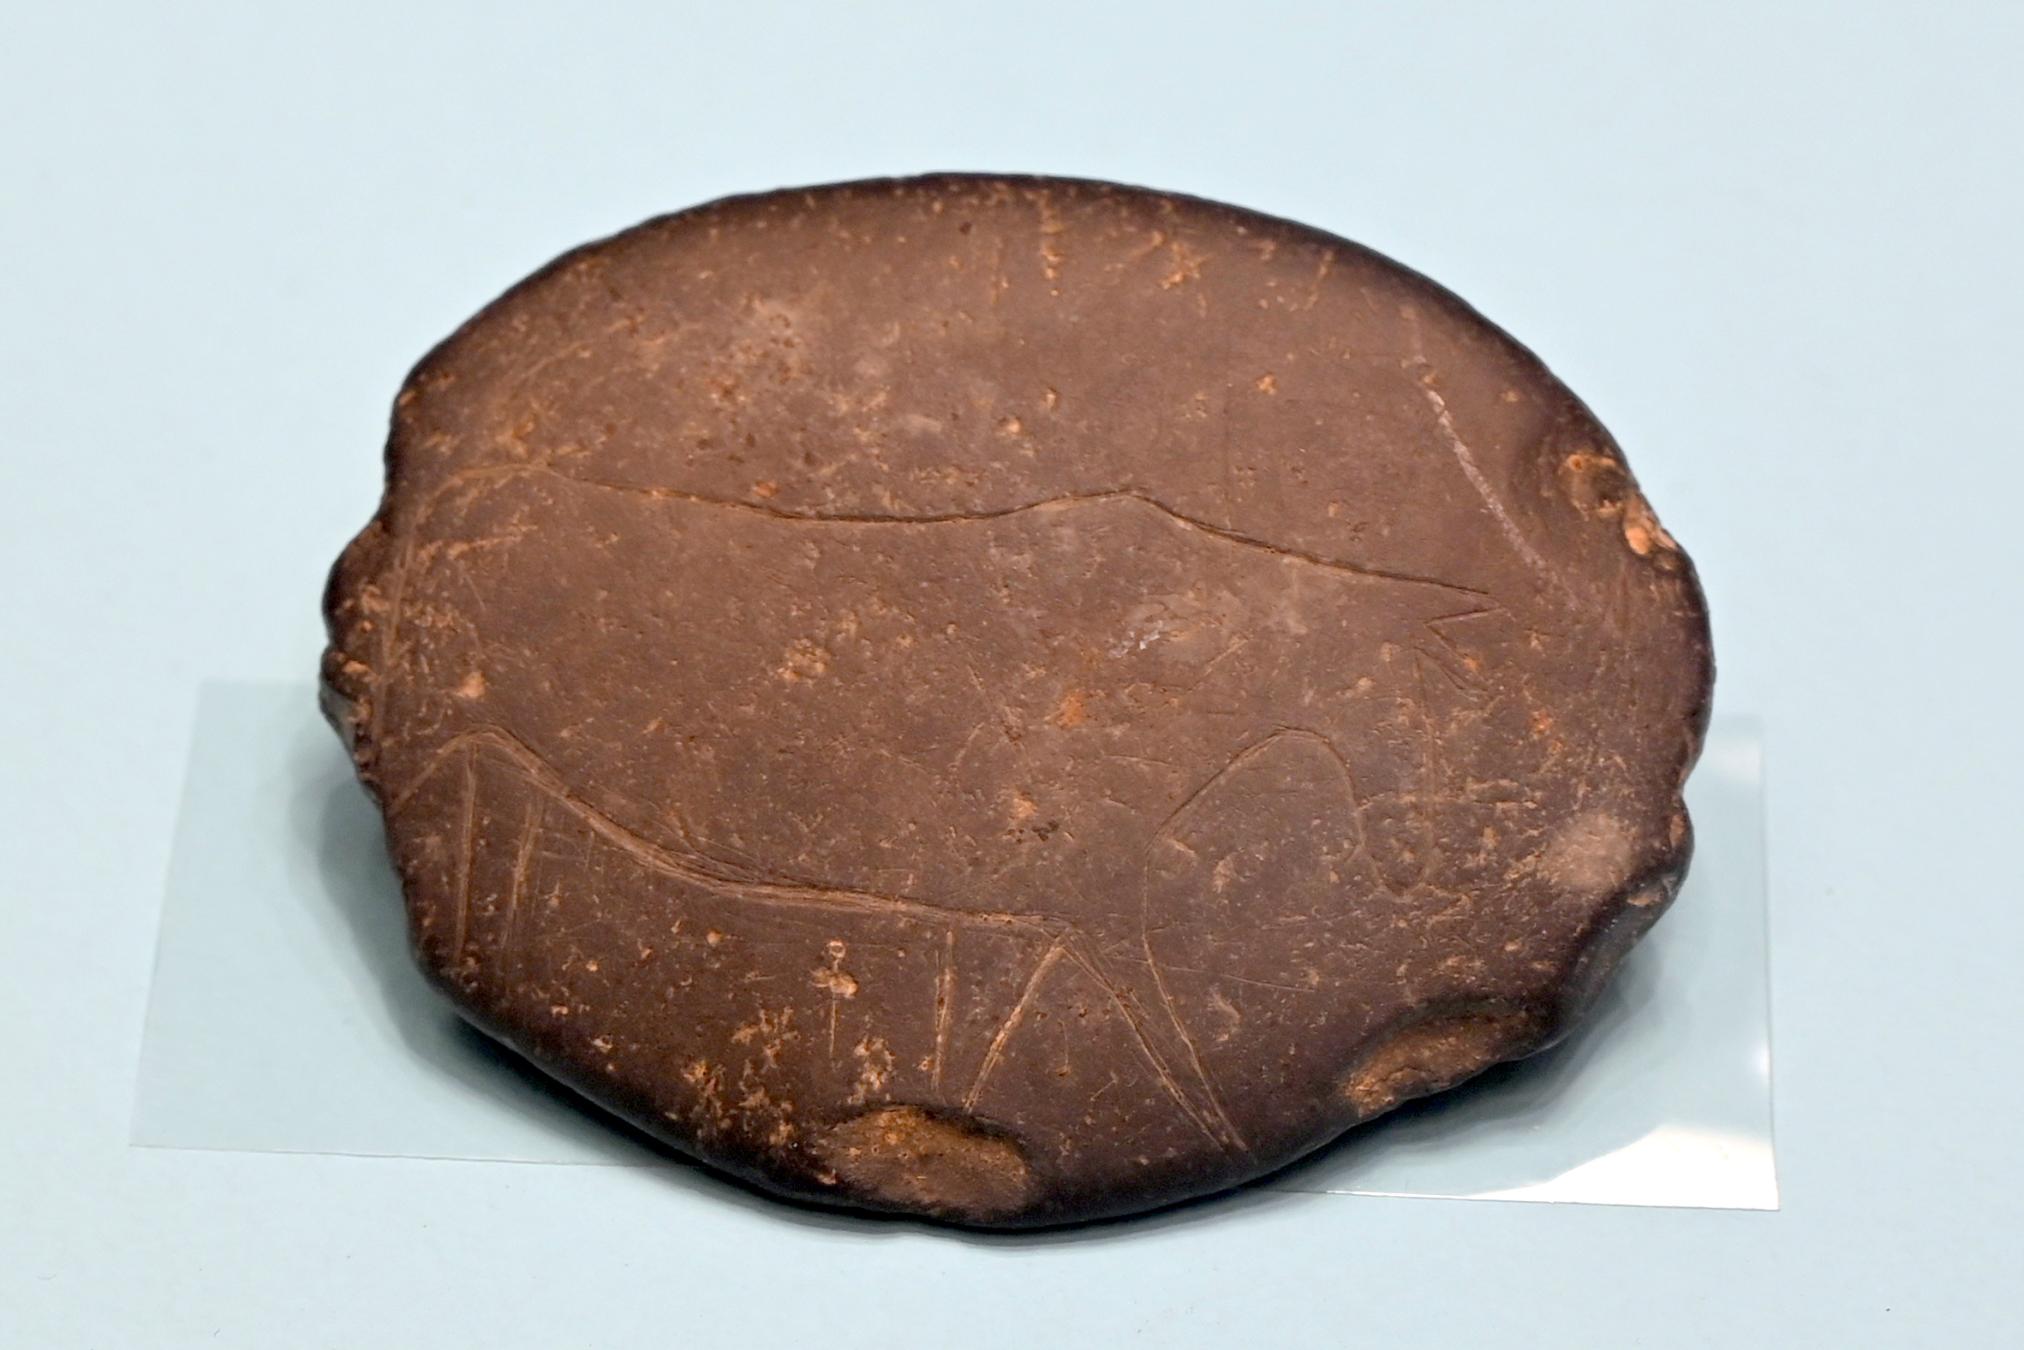 Retuscheur mit Elchgravierung, Spätpaläolithikum, 13000 - 10000 v. Chr., 11000 v. Chr.